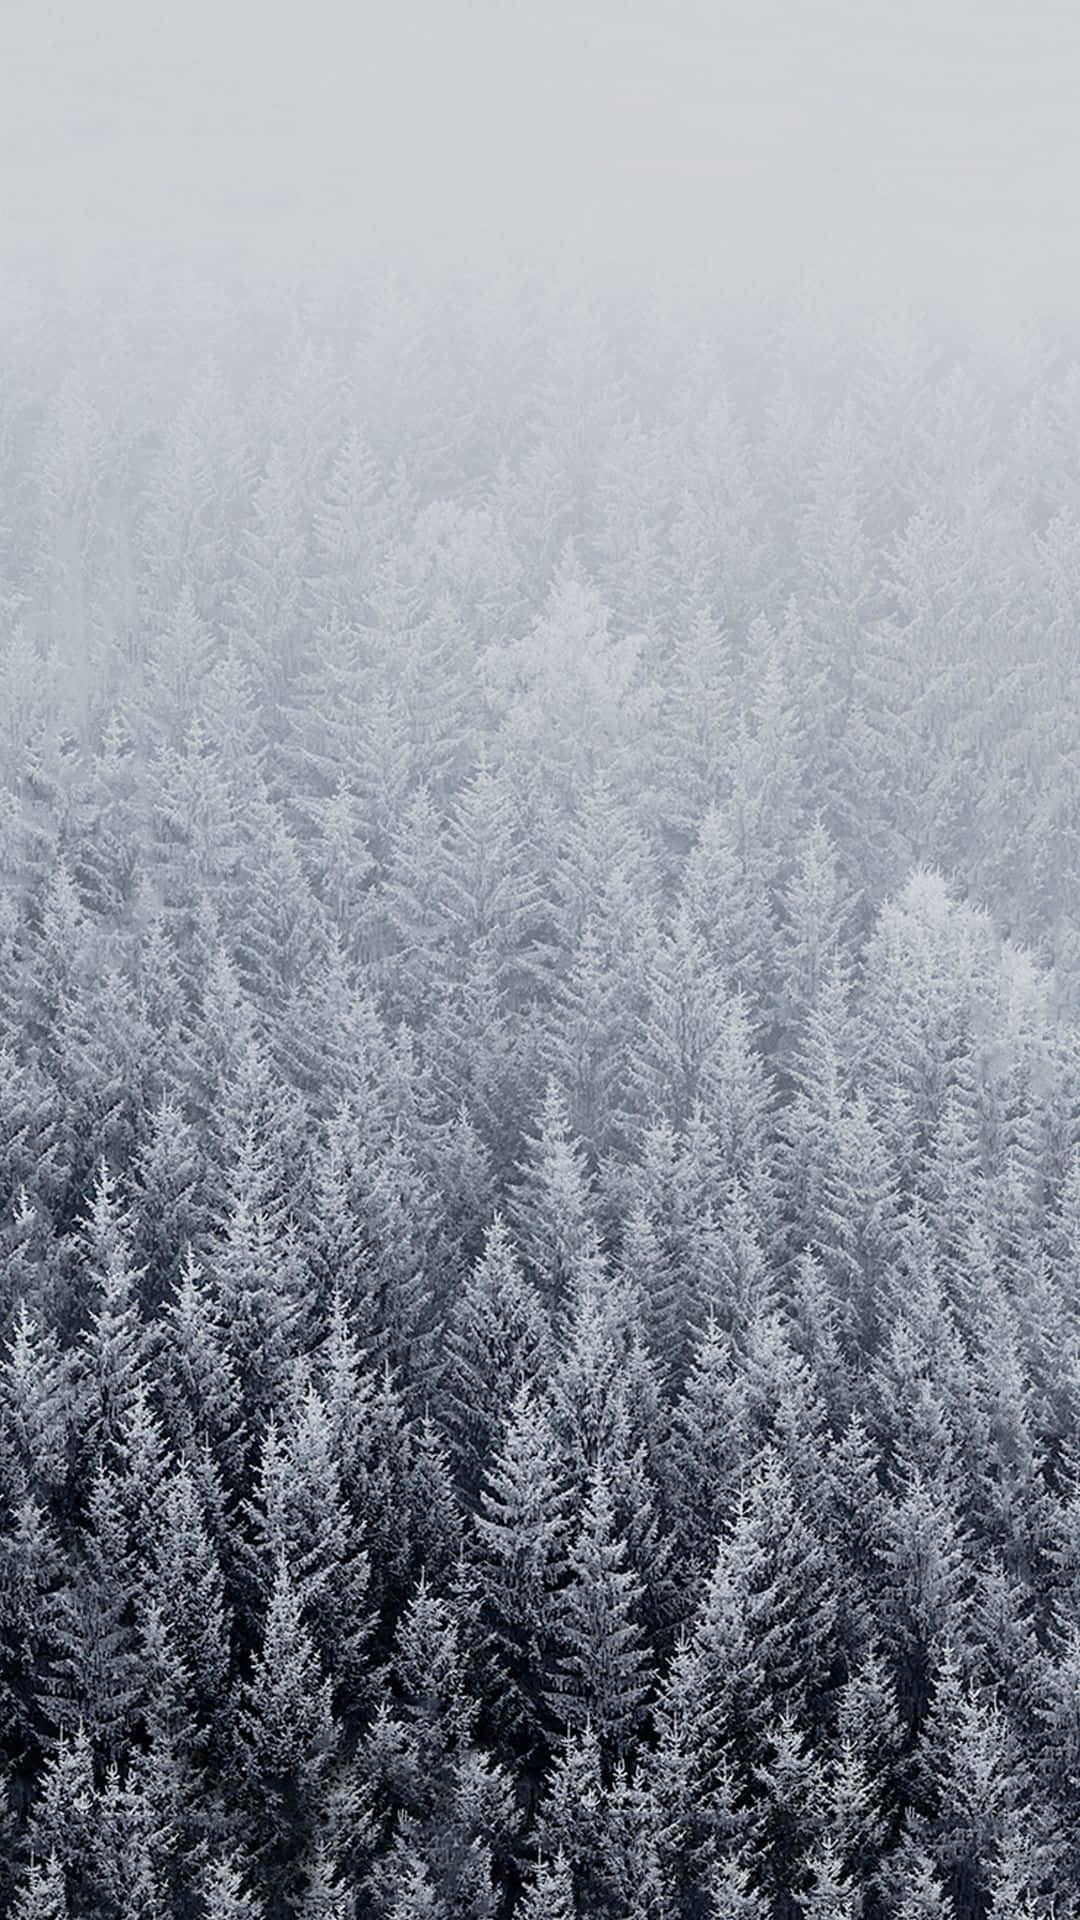 Árbolesmajestuosos Cubiertos De Nieve En Un Invierno Contra Un Cielo Cristalino Fondo de pantalla